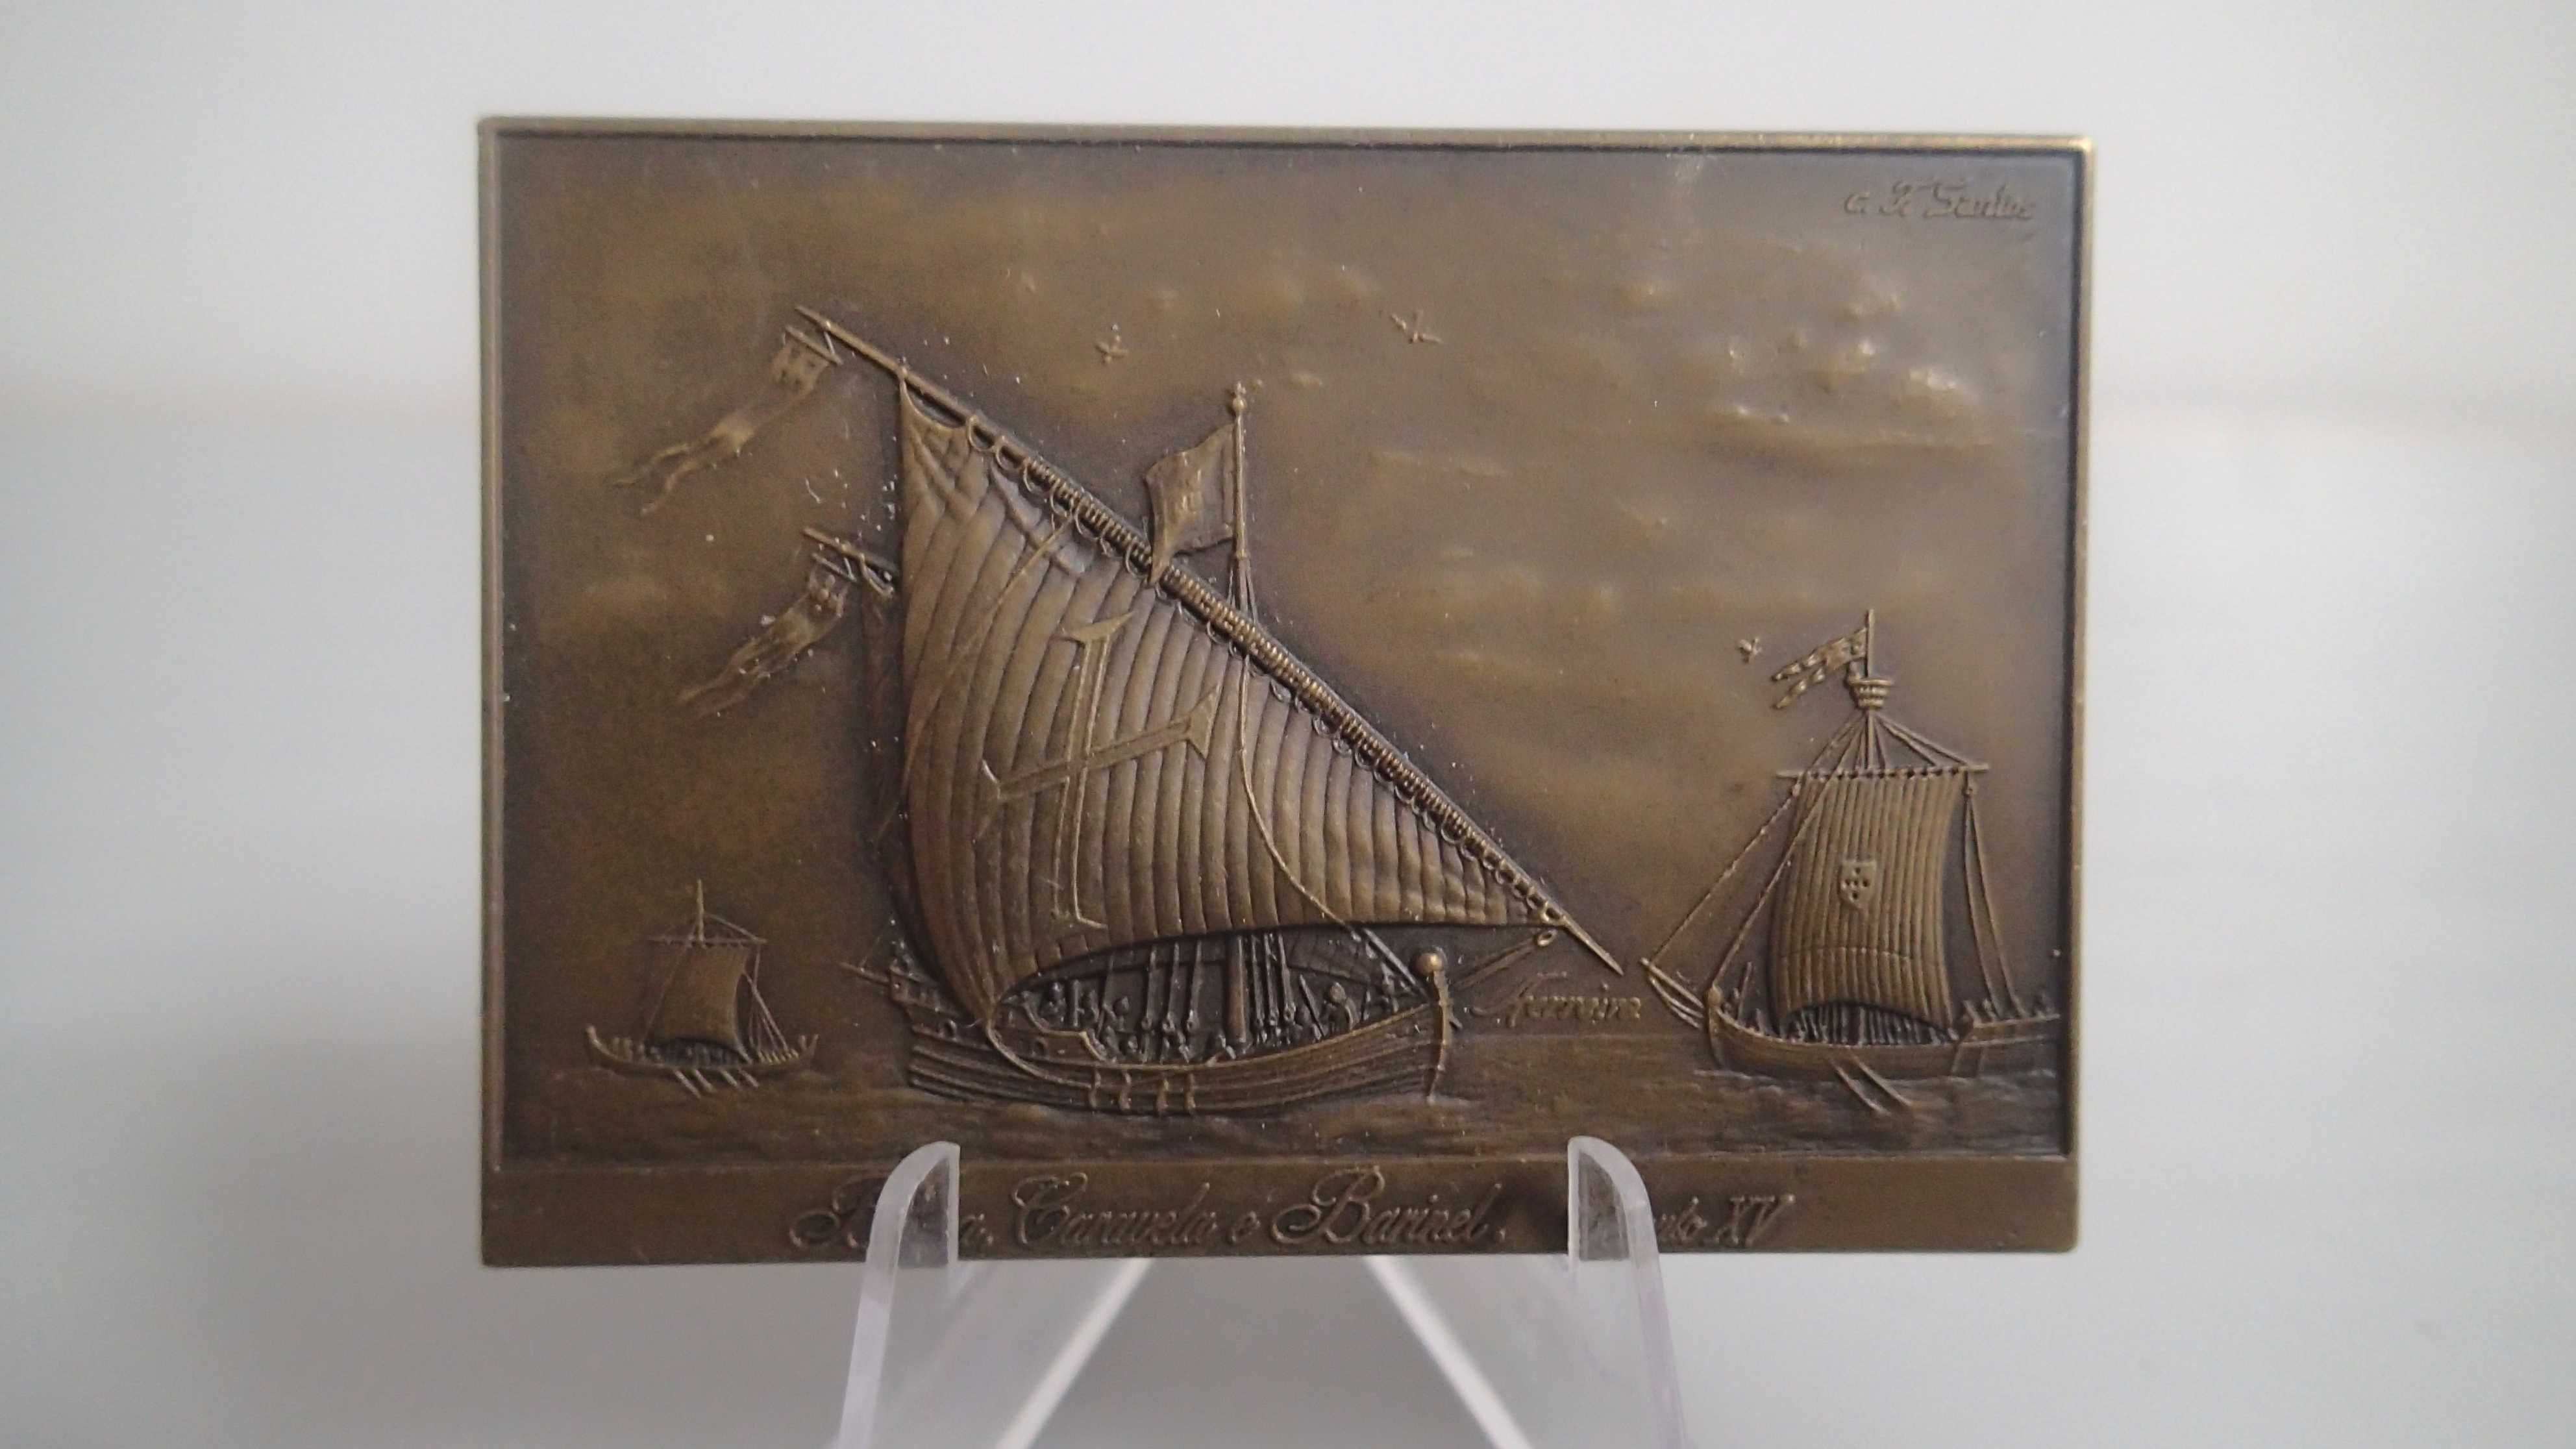 Placas de Bronze Navios Célebres das Armadas Portugueses